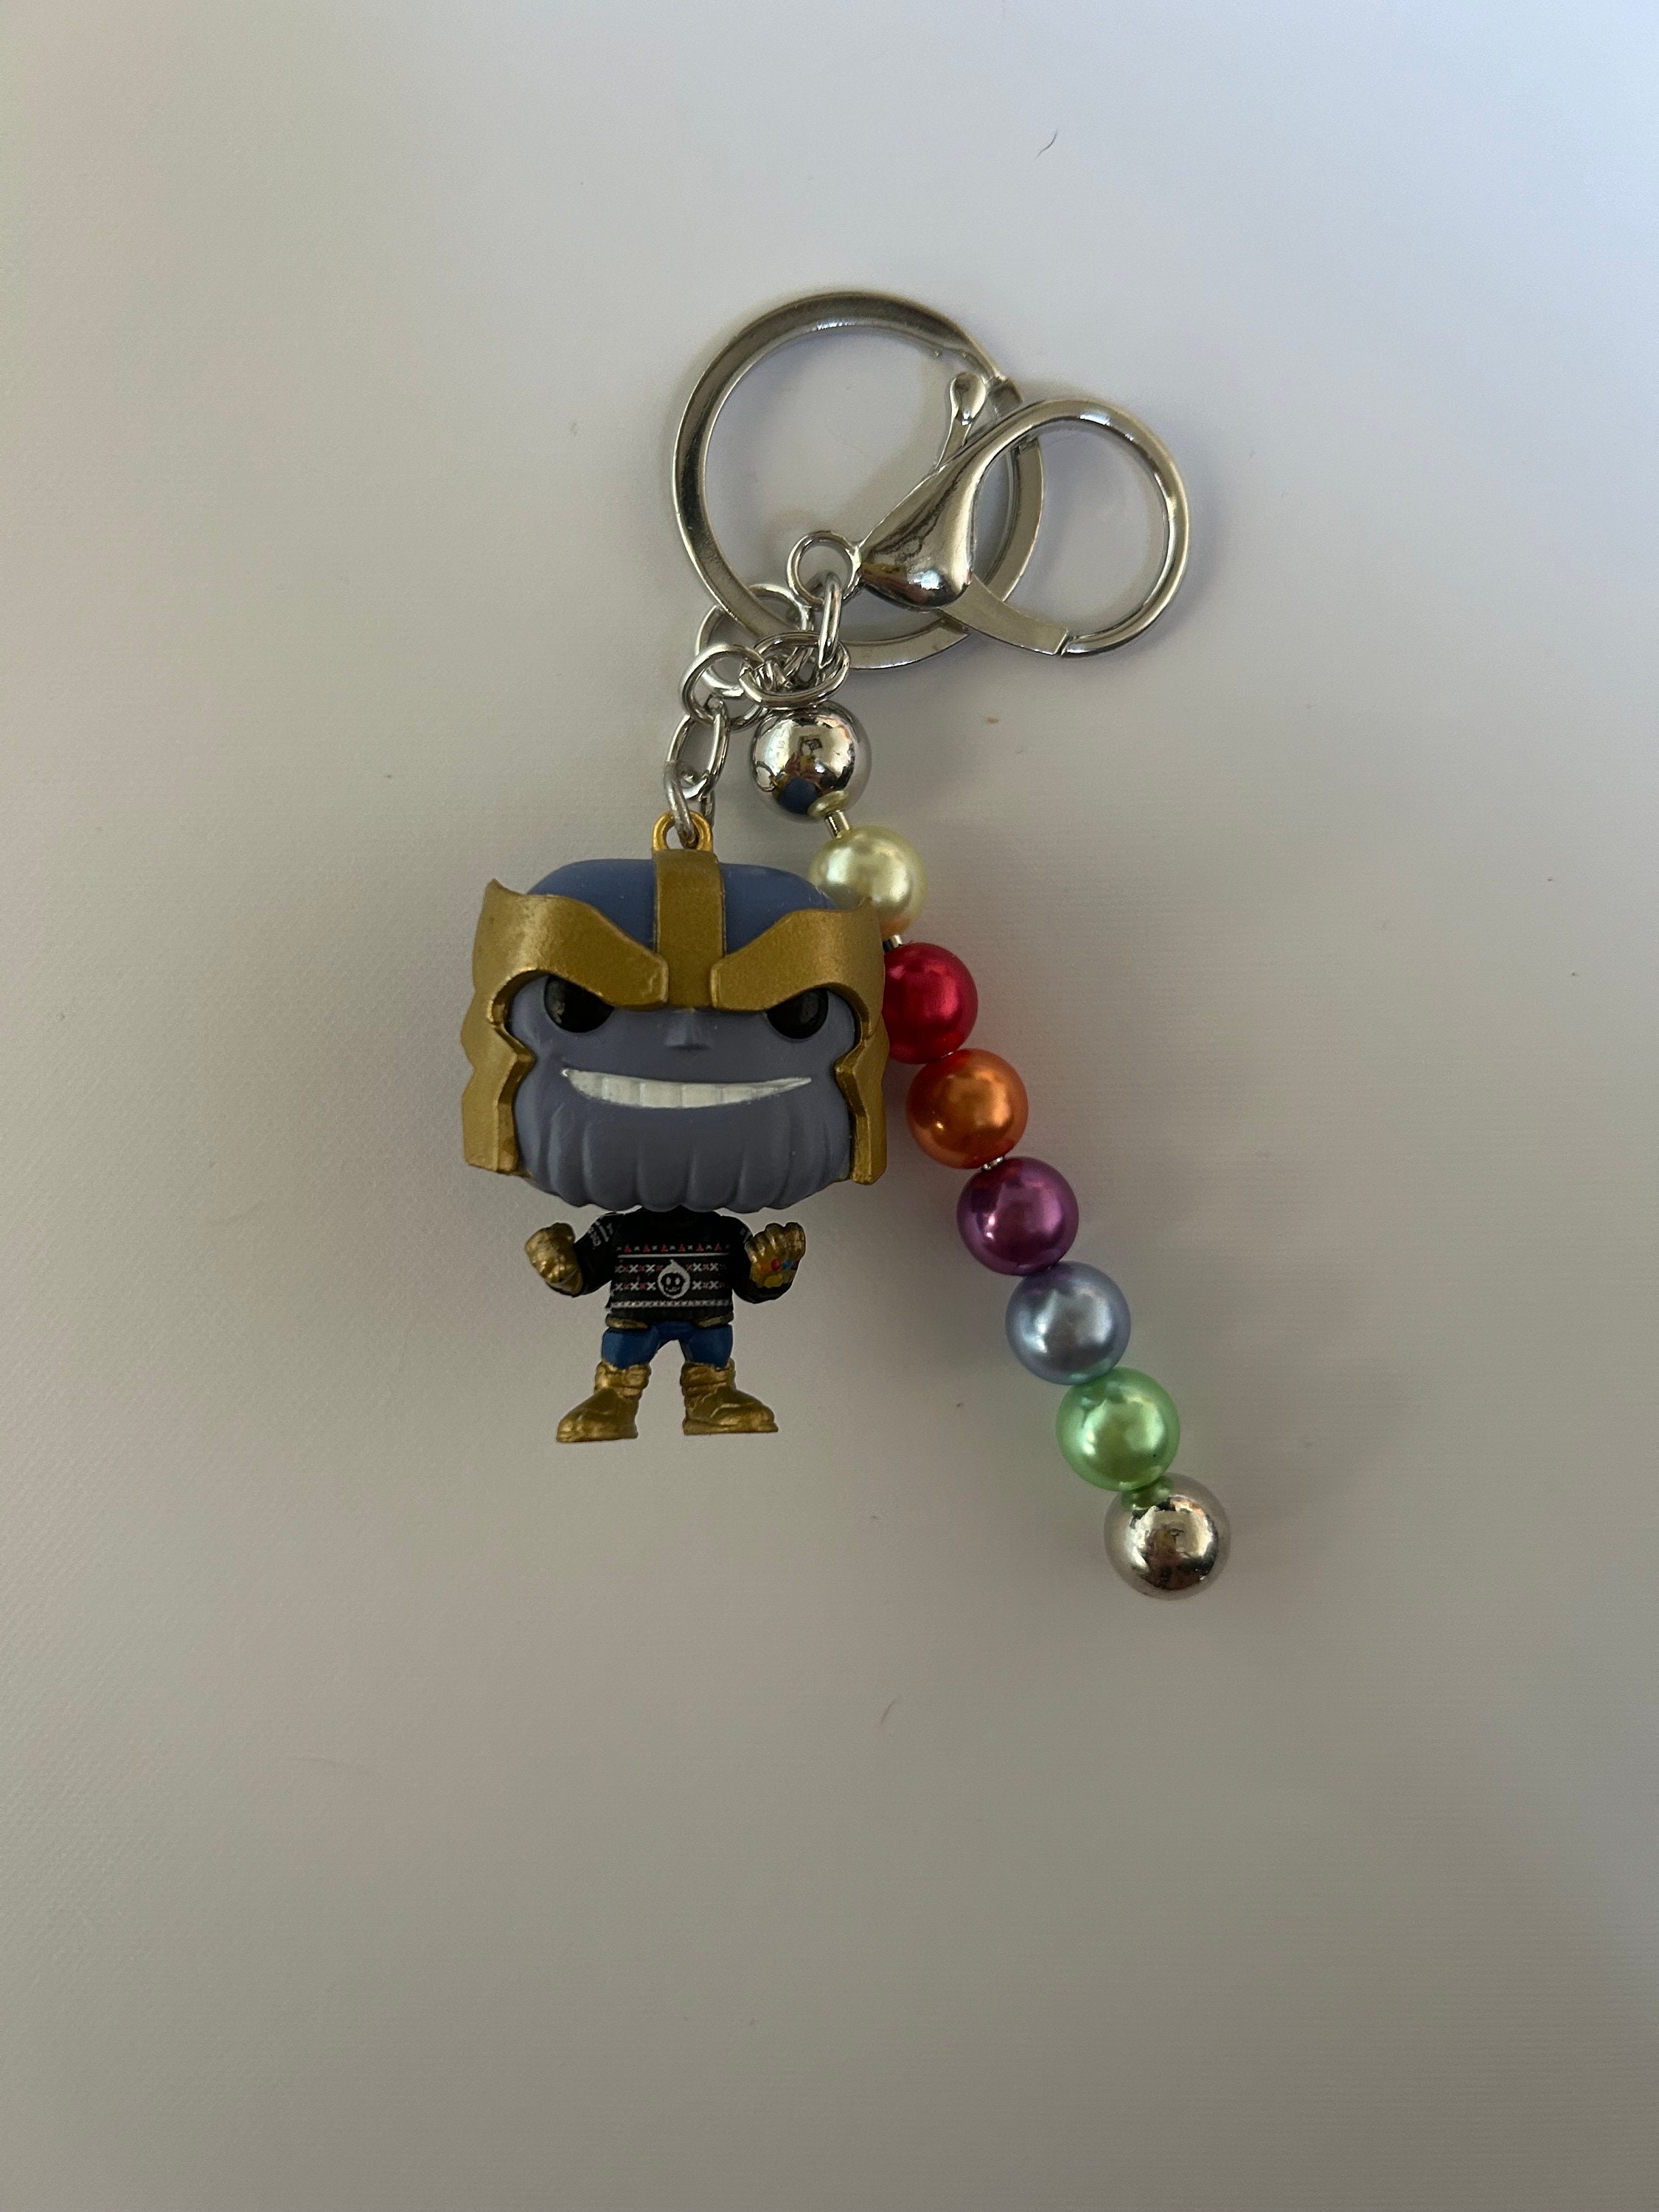 Avengers Endgame - Thanos Funko POP! Keychain order